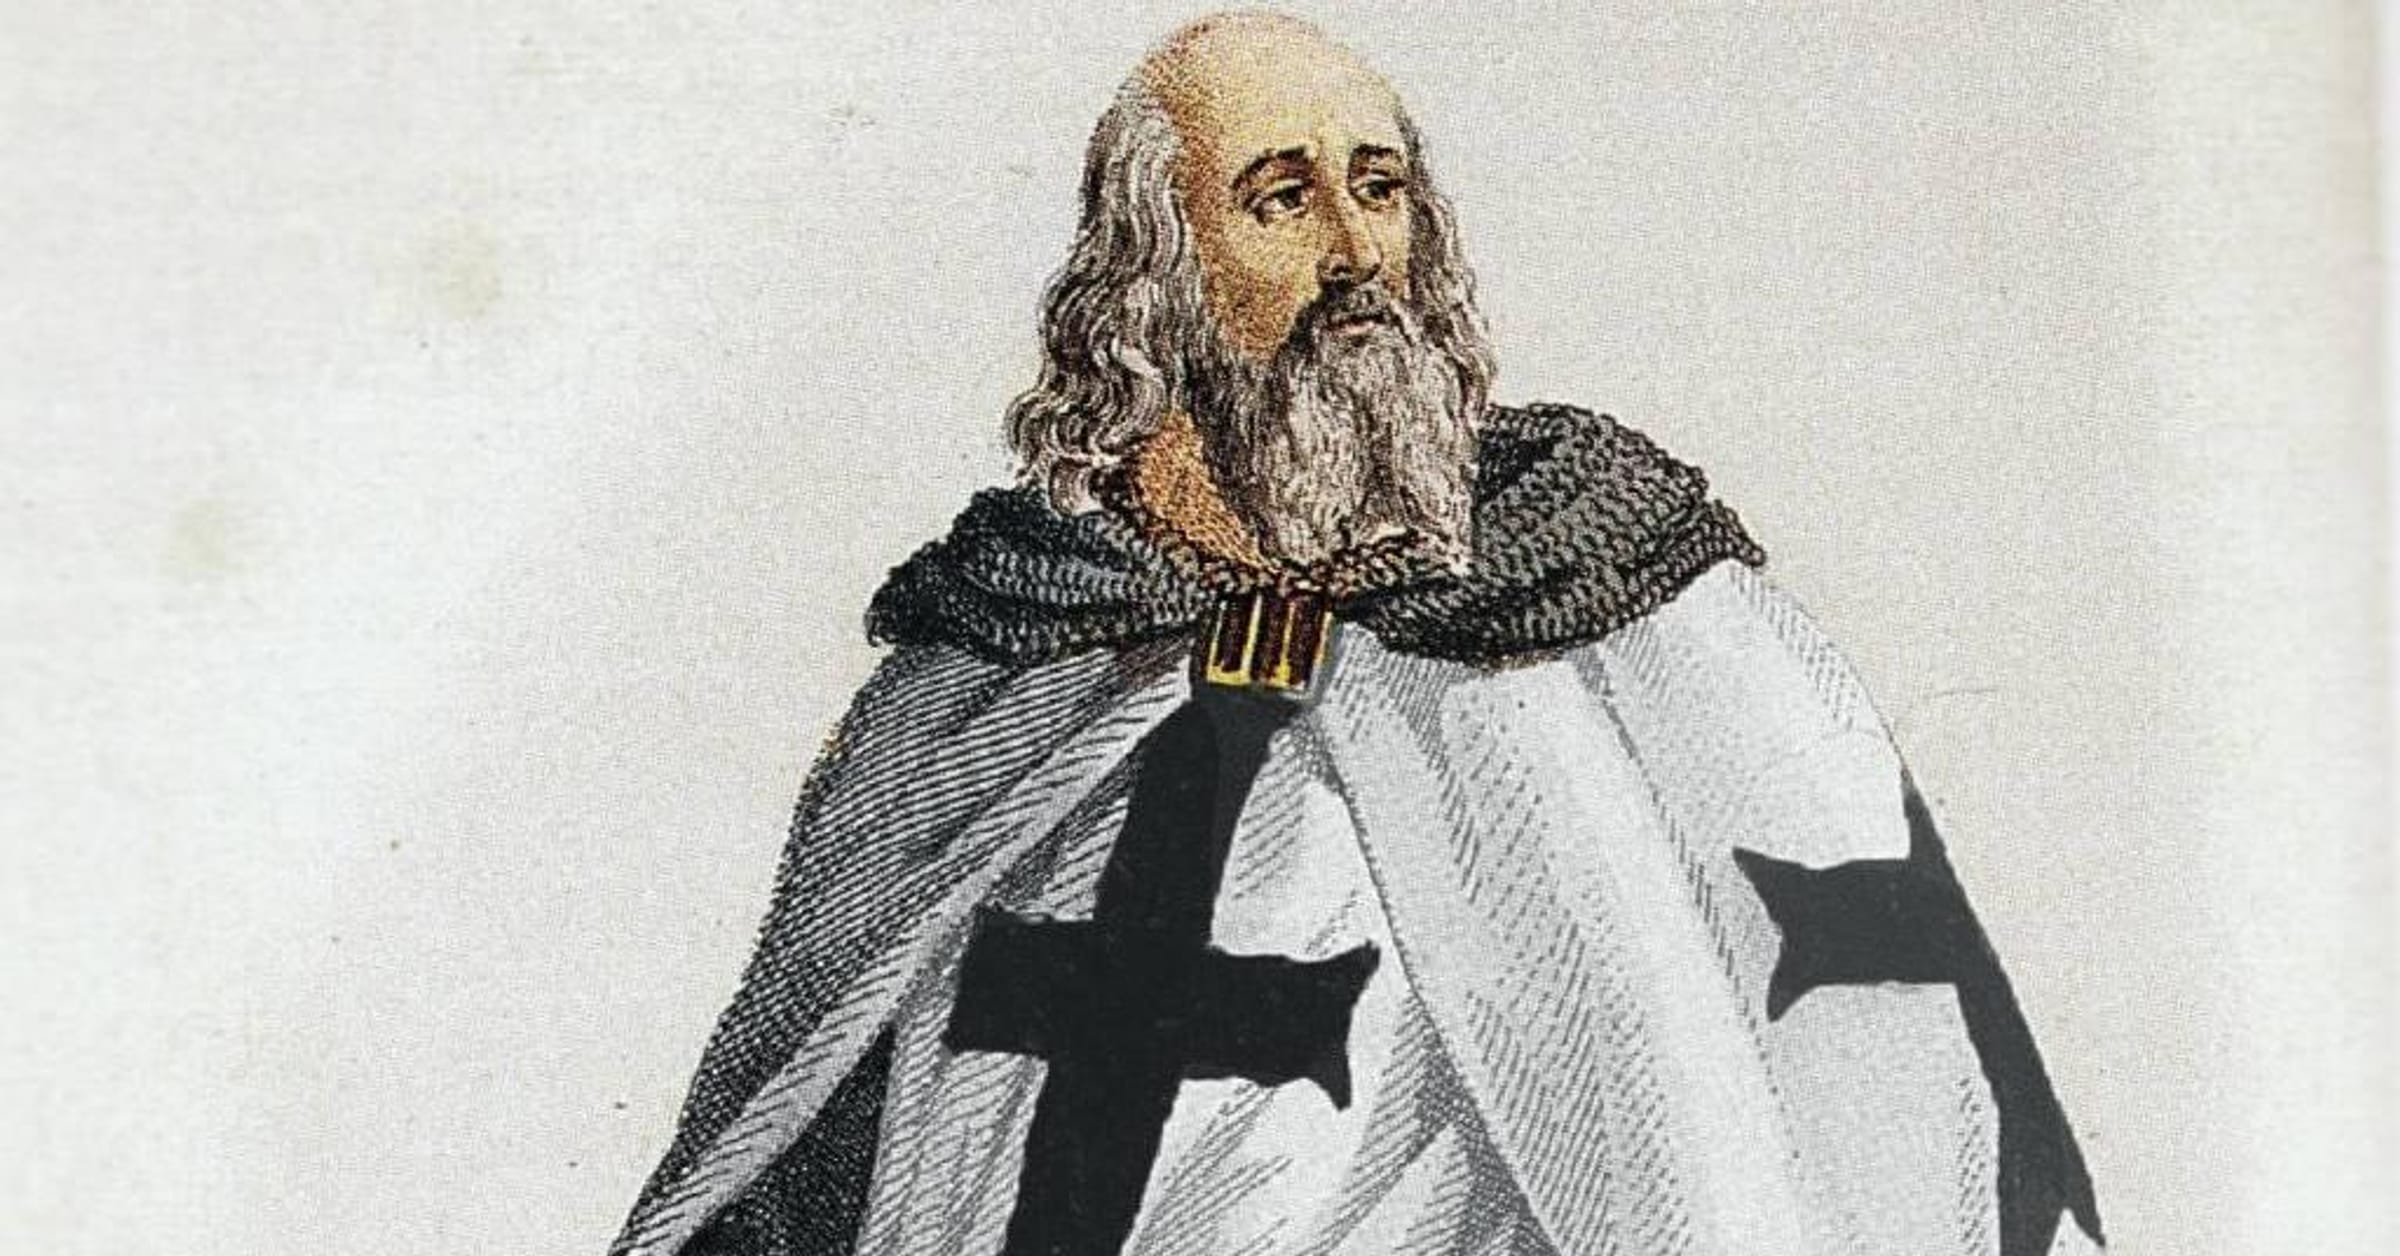 Grand Master Jacques deMolay 1244 – 1314 - Templar History